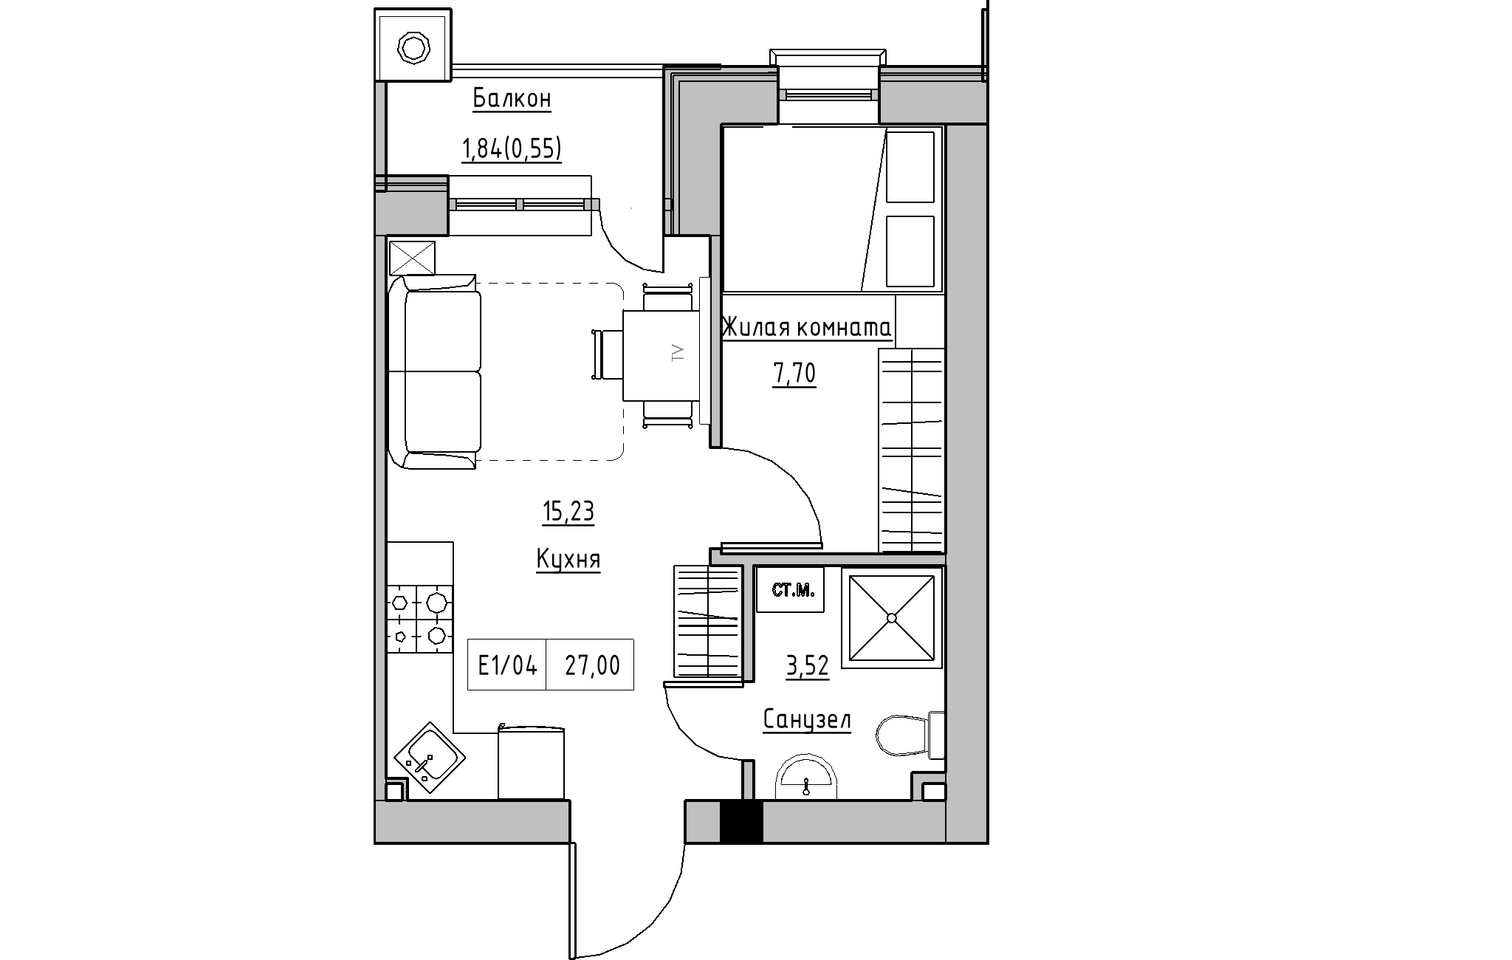 Планування 1-к квартира площею 27м2, KS-010-05/0008.